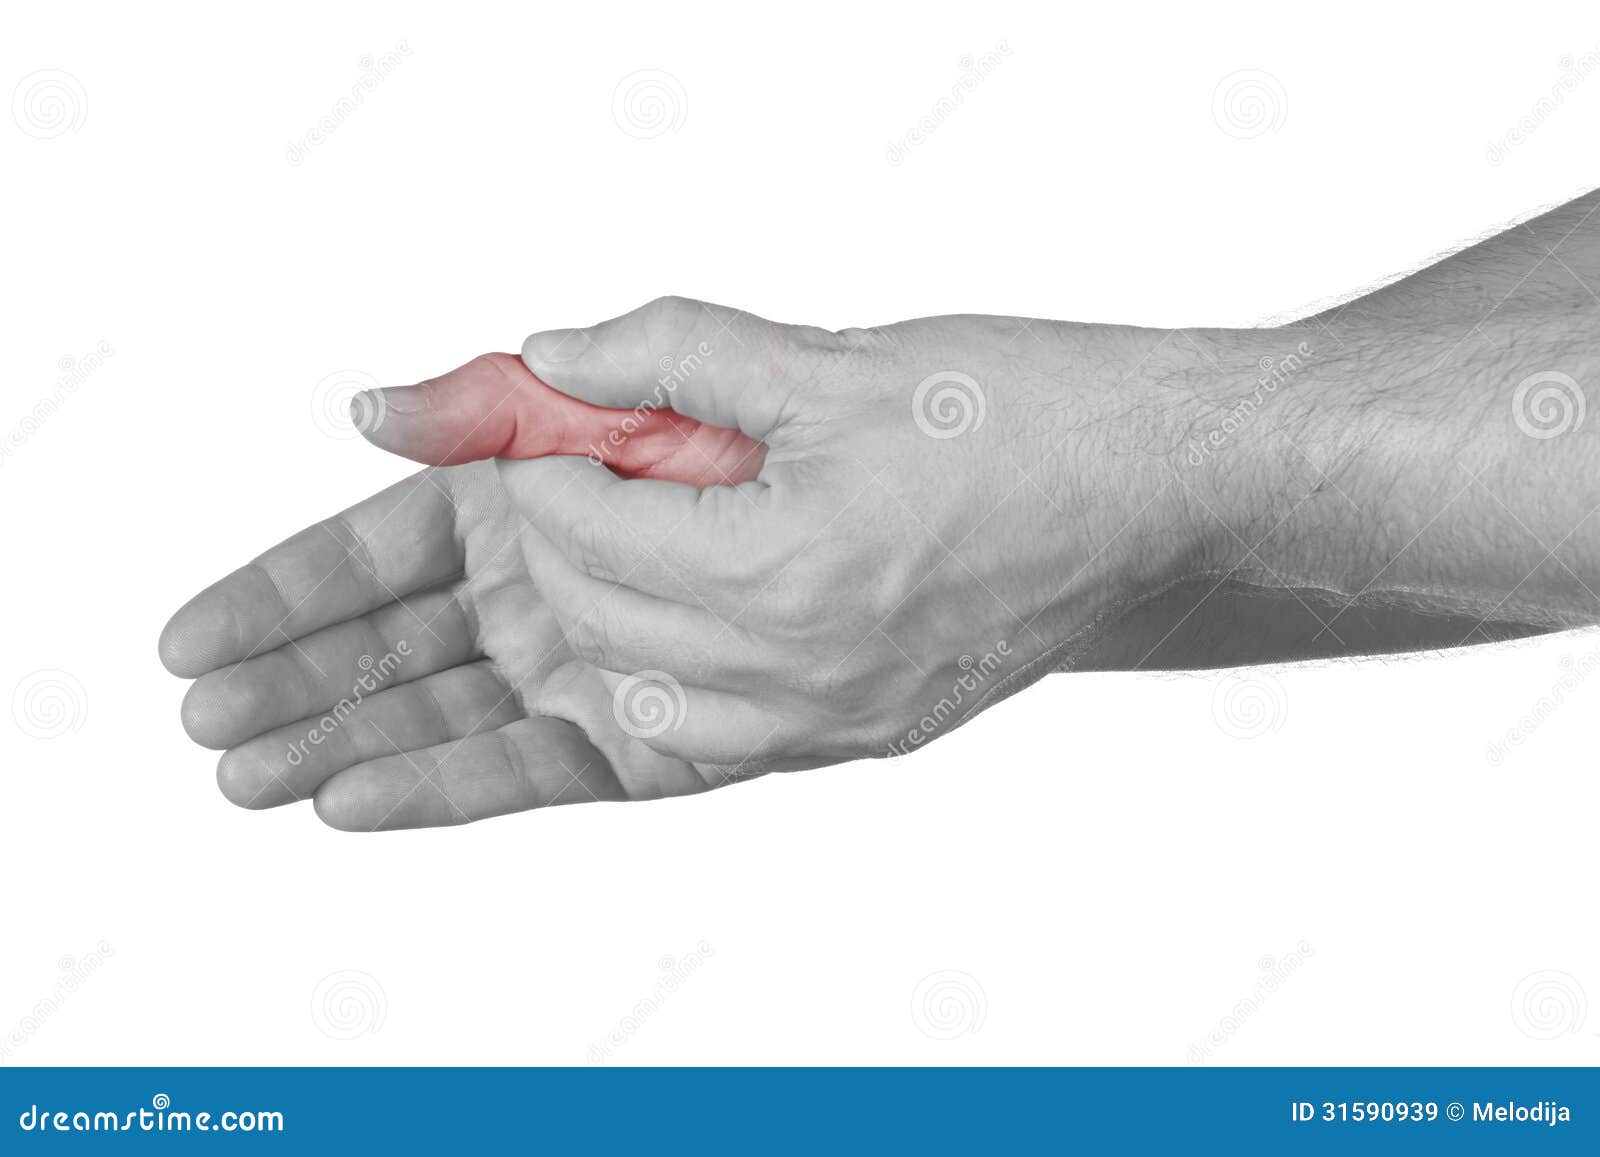 Болит основание большого пальца. Сустав большого пальца руки. Боль в суставе большого пальца руки. Болит сустав большого пальца на руке. Болит сустав Болшево пальца на руке.